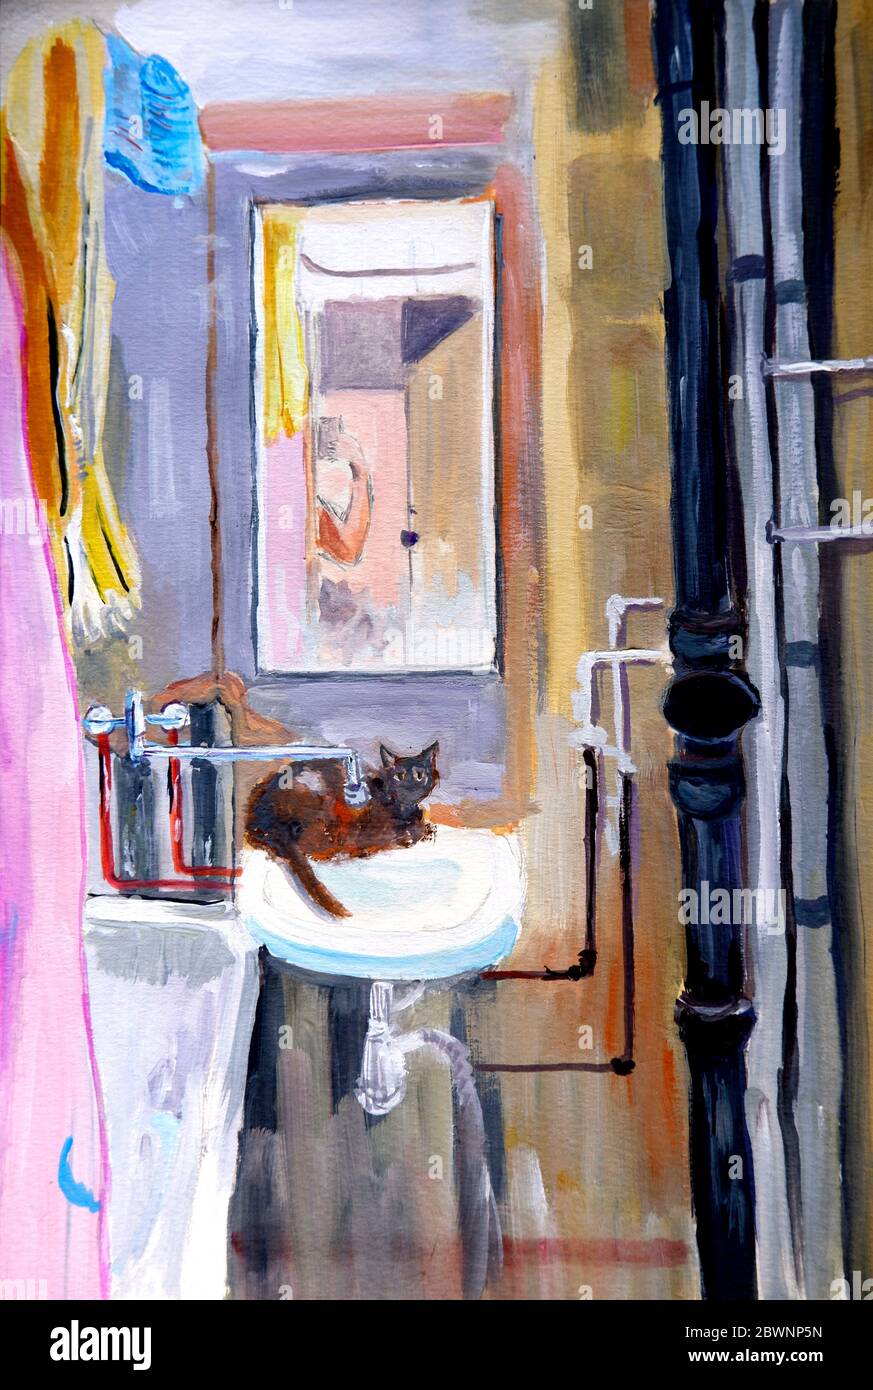 Interieur eines Badezimmers mit Reparaturen und eine Katze auf dem Waschbecken sitzen, Gouache Malerei Stockfoto